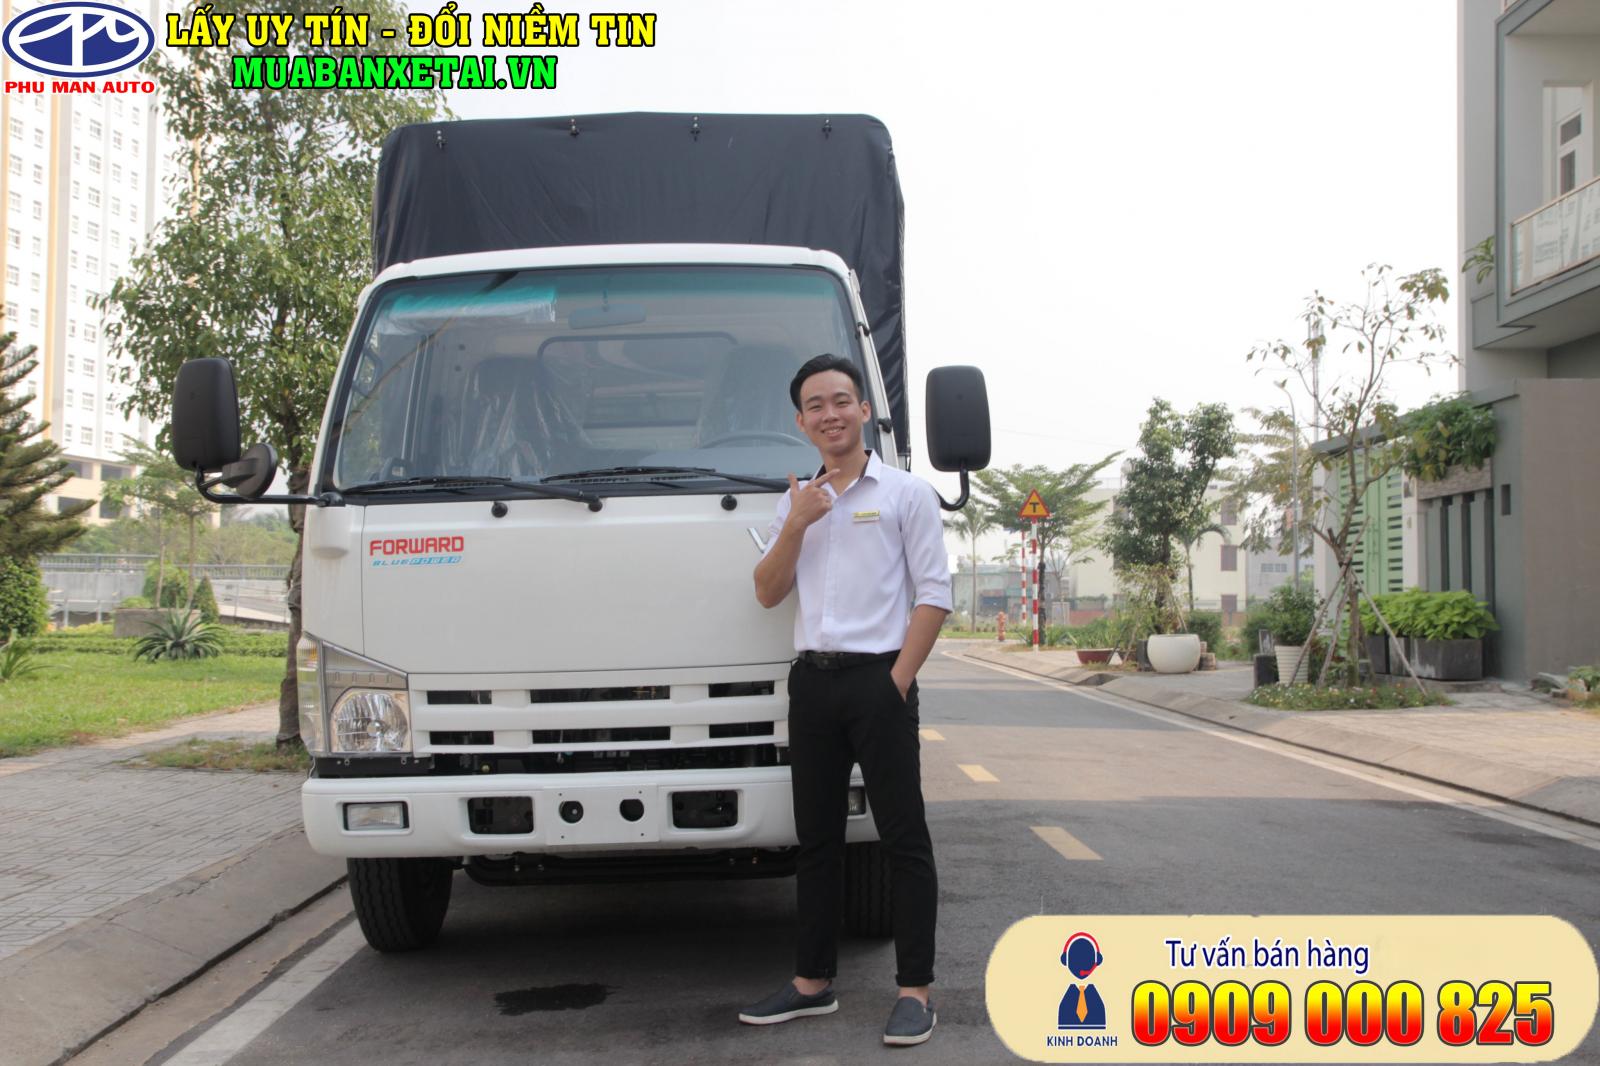 “Giá mới” xe tải Isuzu Vĩnh Phát 1.9 tấn, thùng dài 6.2 mét - 0909 000 825-5